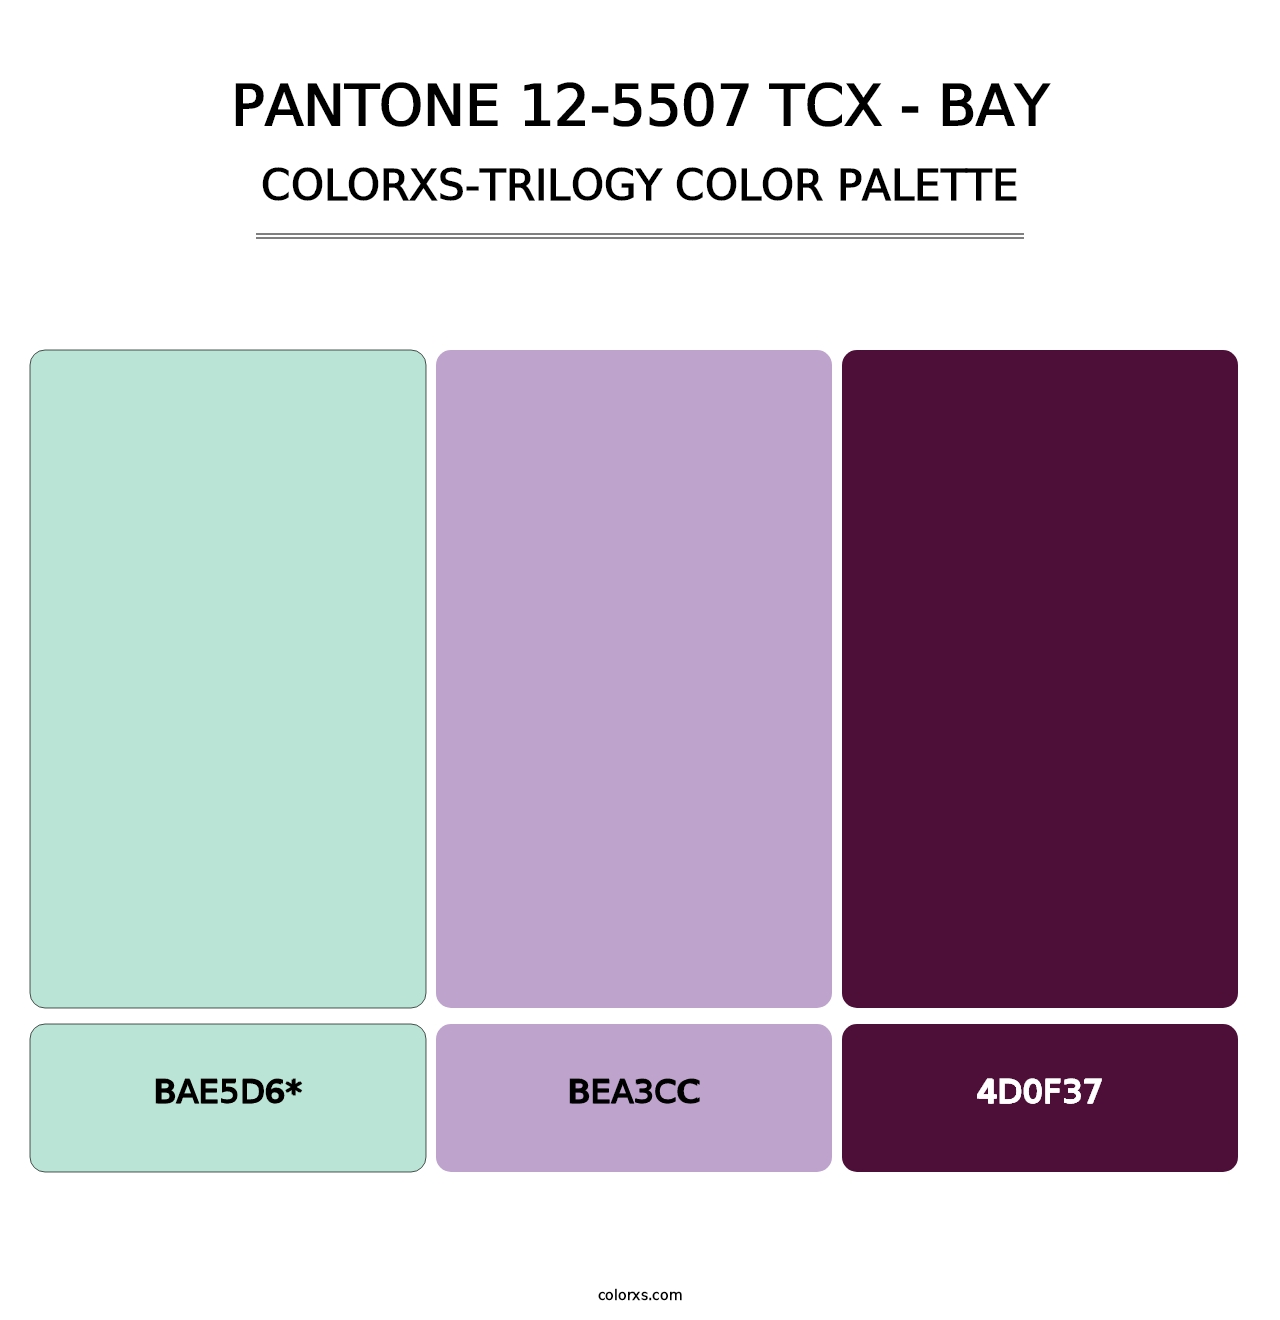 PANTONE 12-5507 TCX - Bay - Colorxs Trilogy Palette